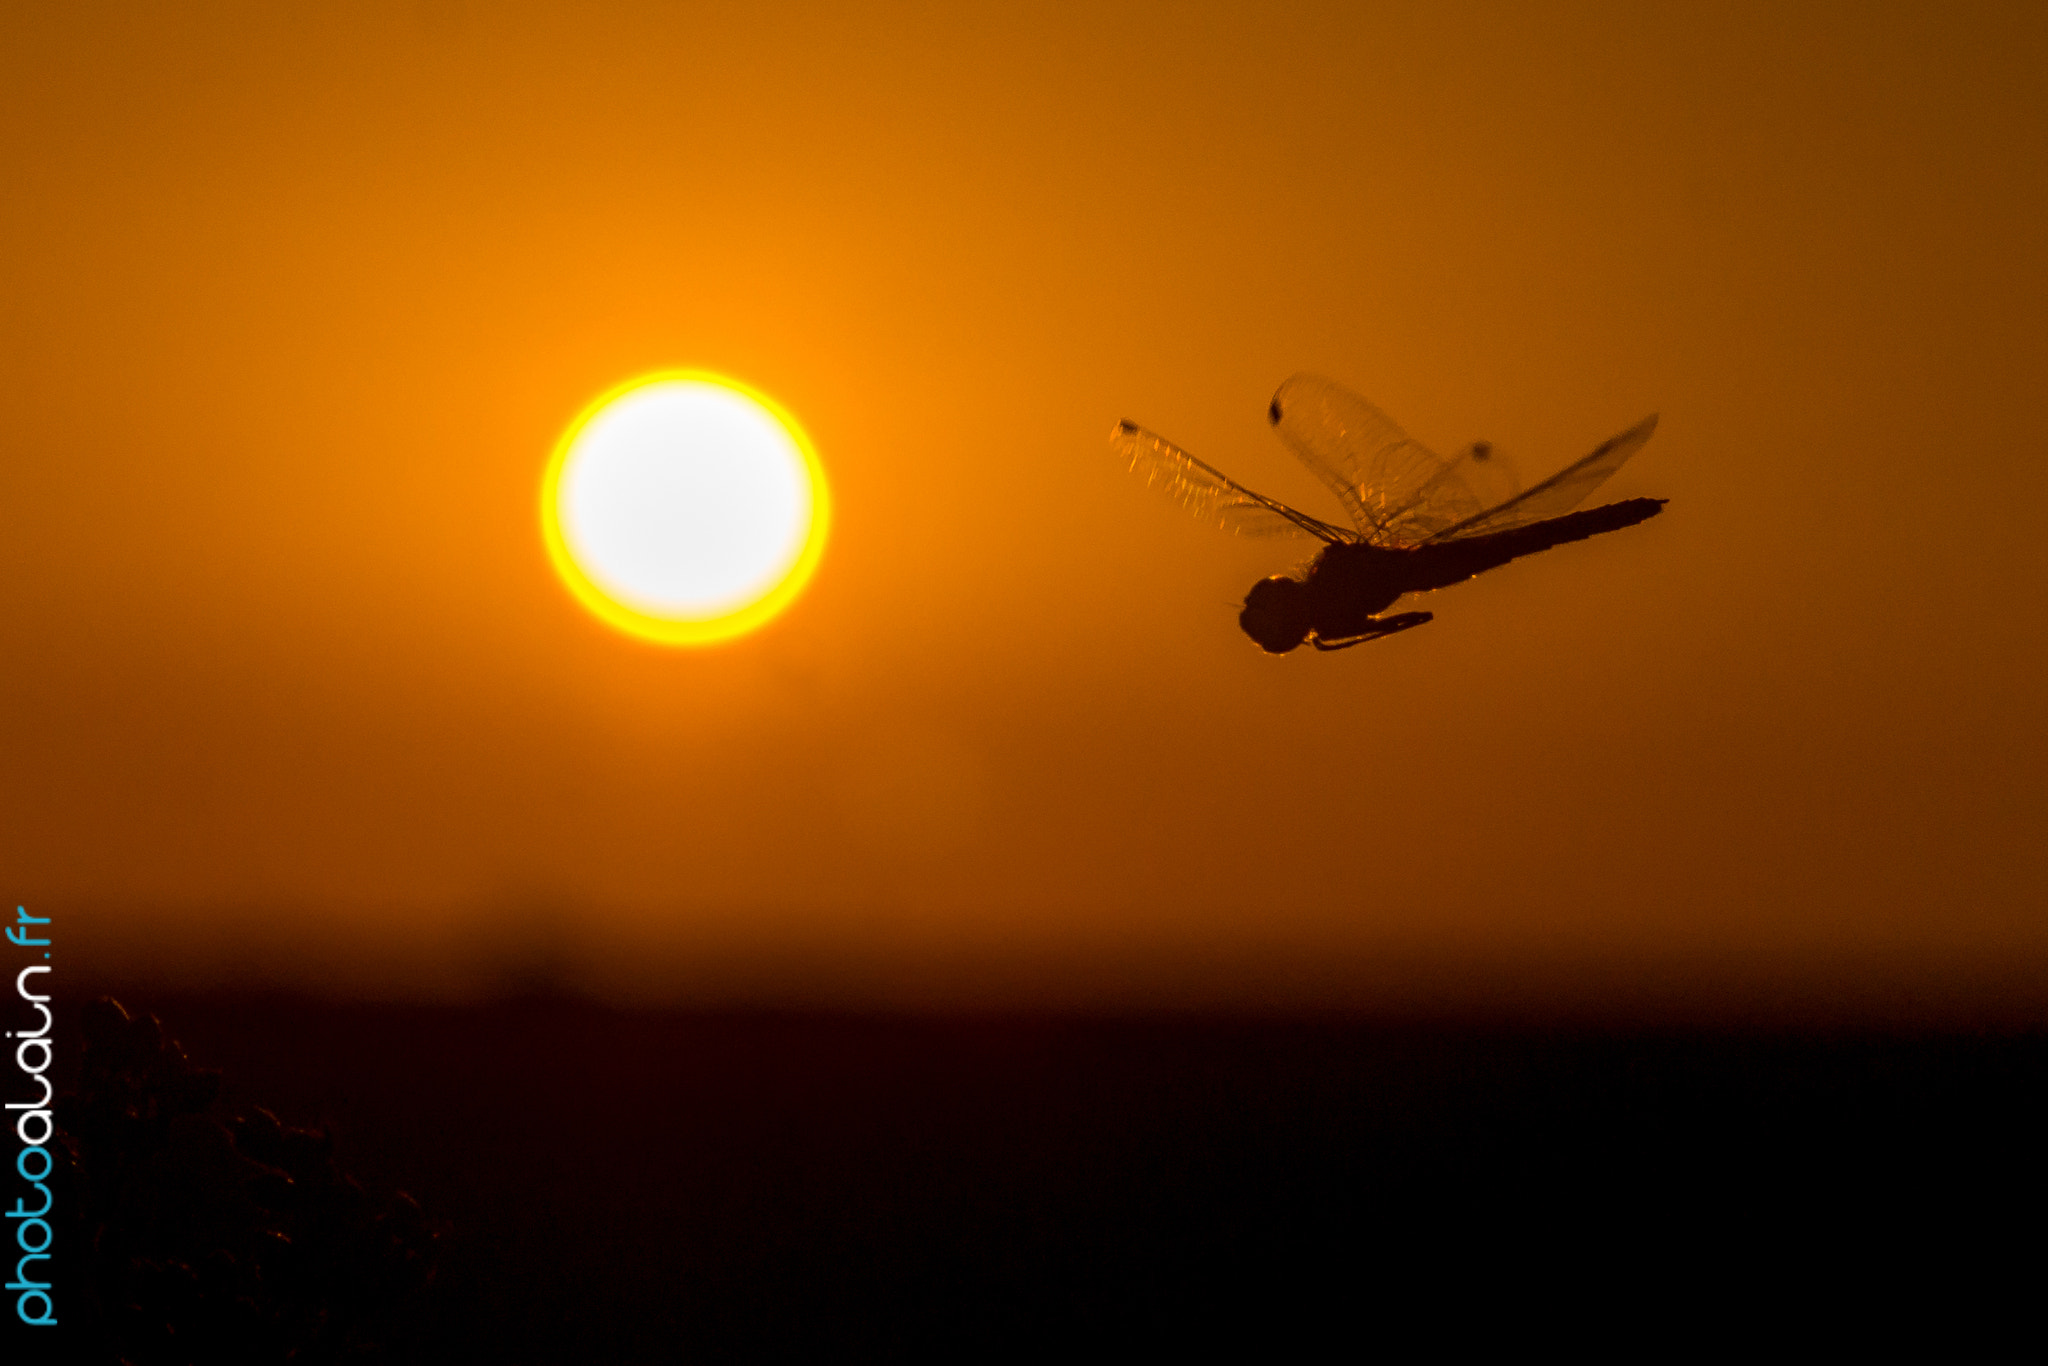 Sony SLT-A77 sample photo. Sun & dragonfly photography